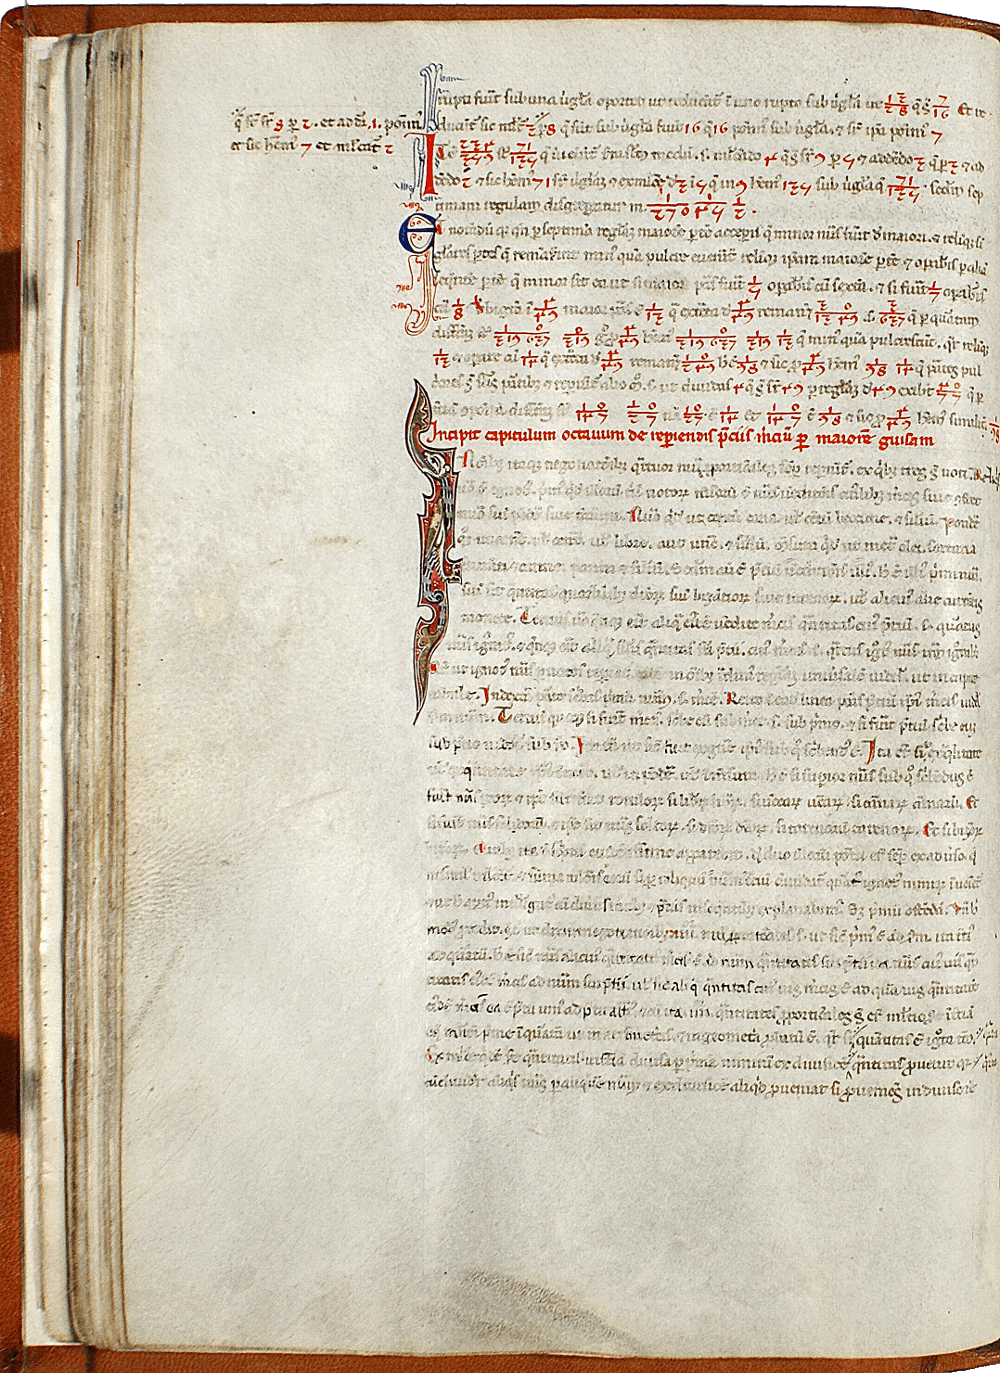 pagina iniziale capitolo ottavo del Liber abaci<br>Conv. Sopp. C.I. 2616, BNCF,  folio 34 verso